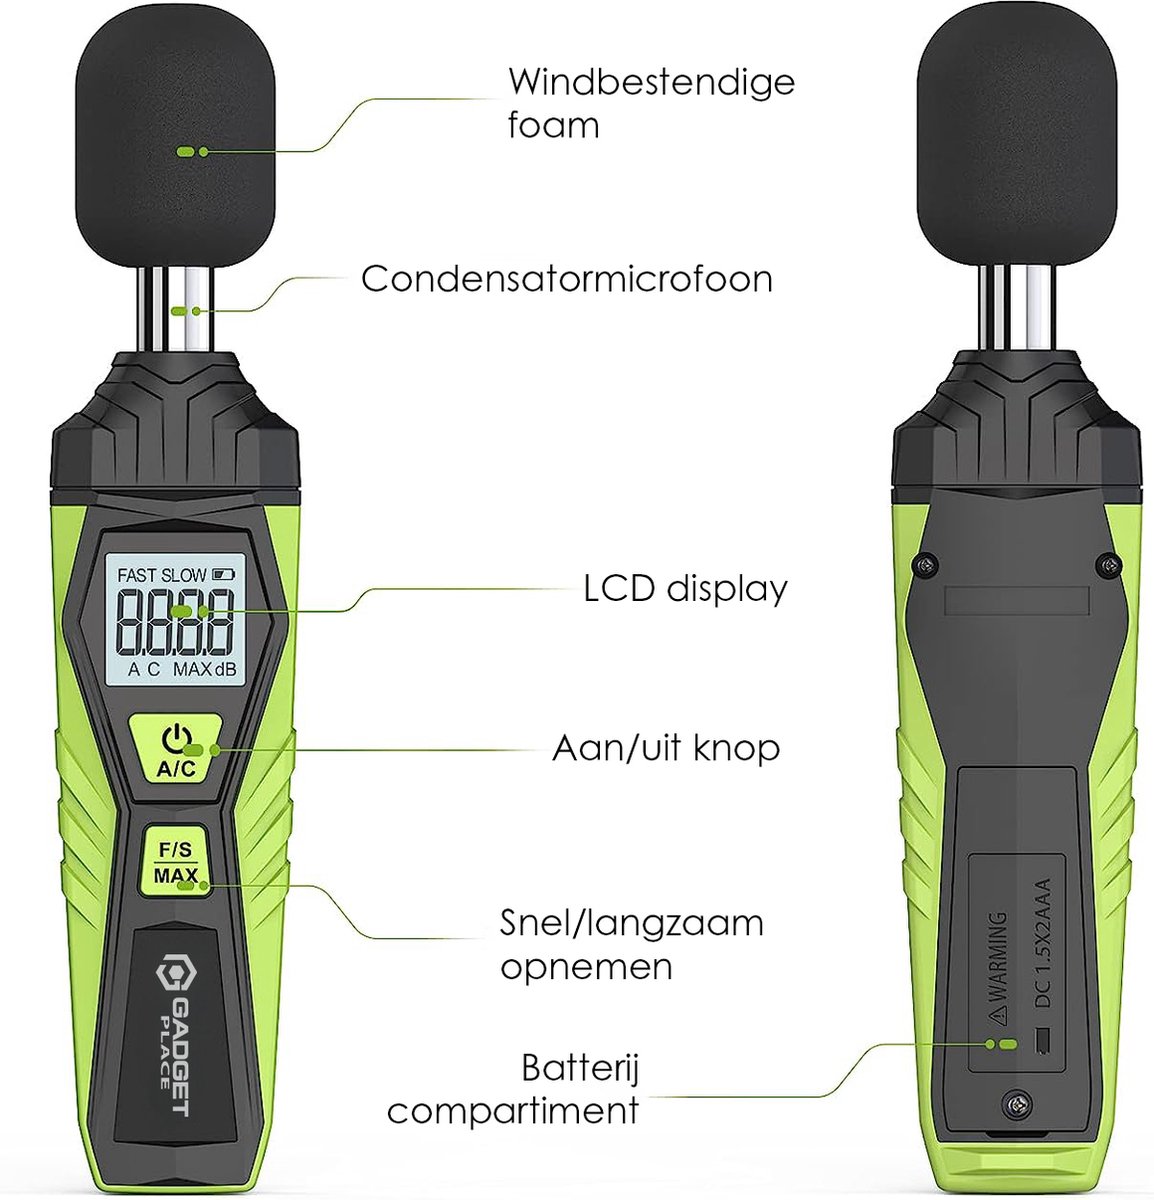 Sonomètre PuroTech - Décibelmètre numérique - Écran LCD - Pollution sonore  - 30 dB à